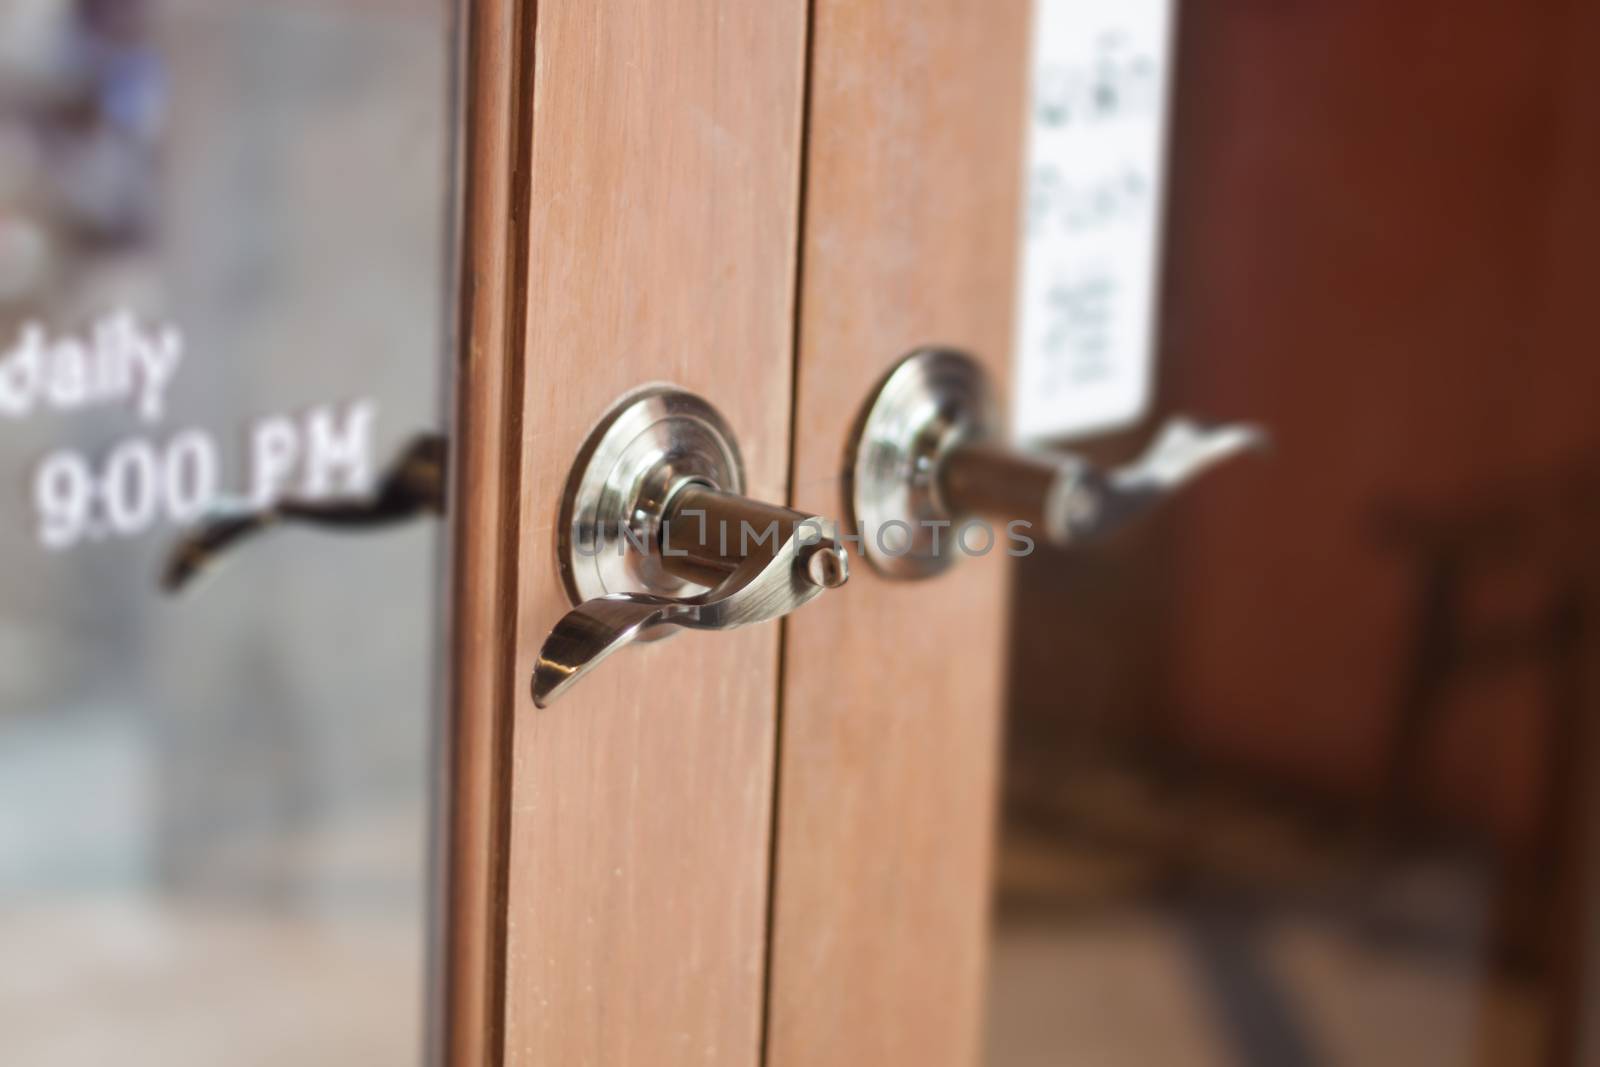 Metal door handles on wardrobe doors by punsayaporn